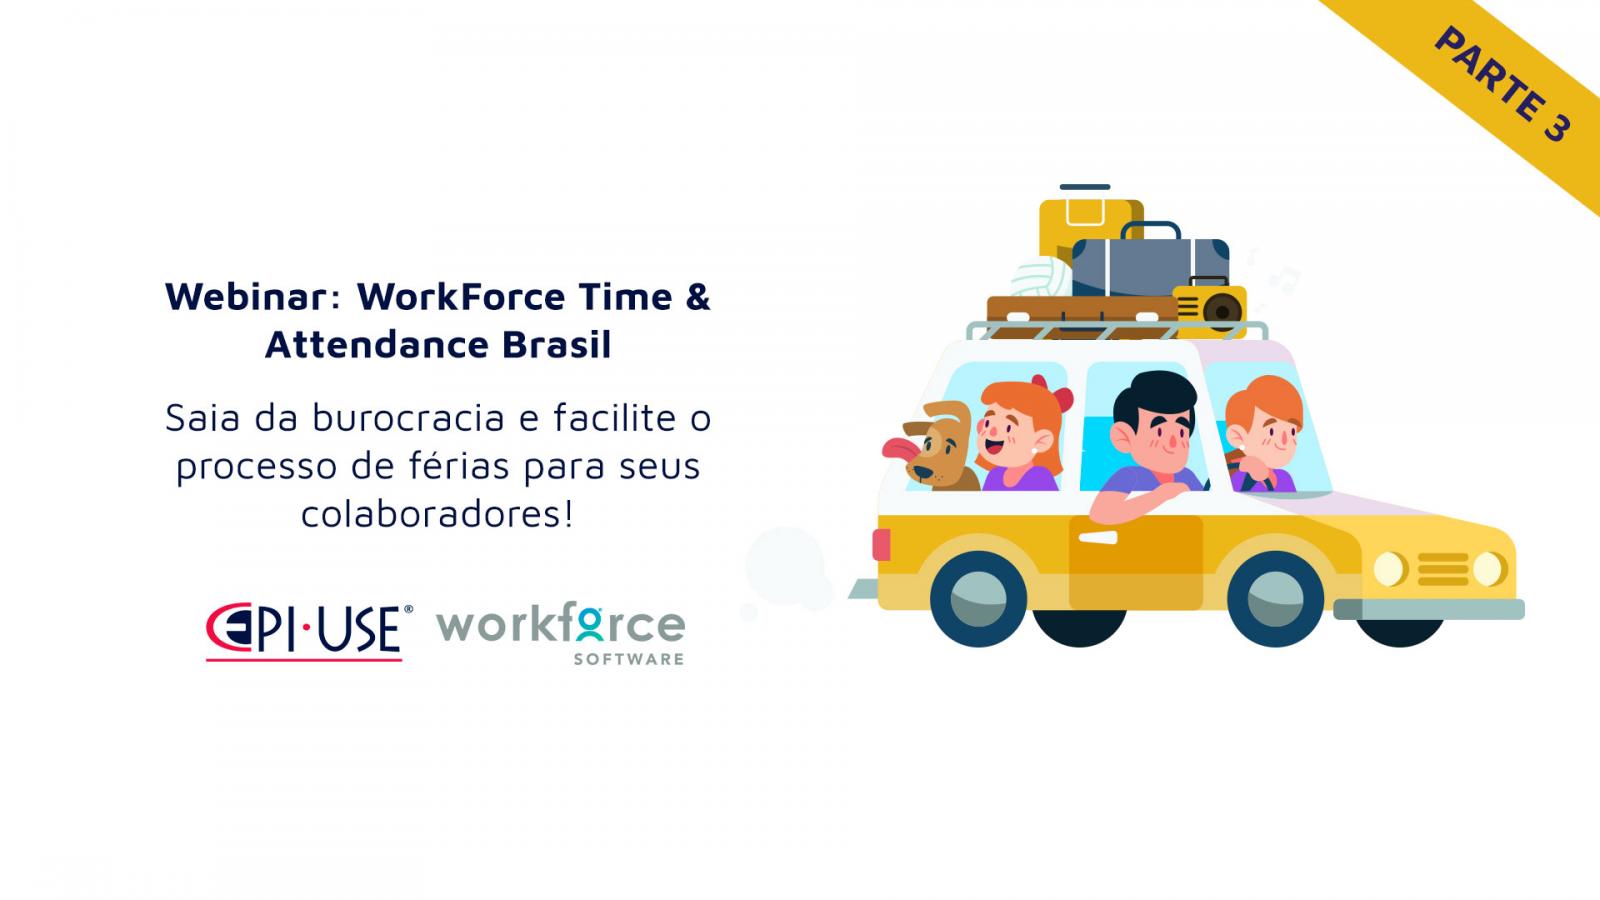 Saia da burocracia e facilite o processo de férias para seus colaboradores com o WorkForce Software Time & Attendance